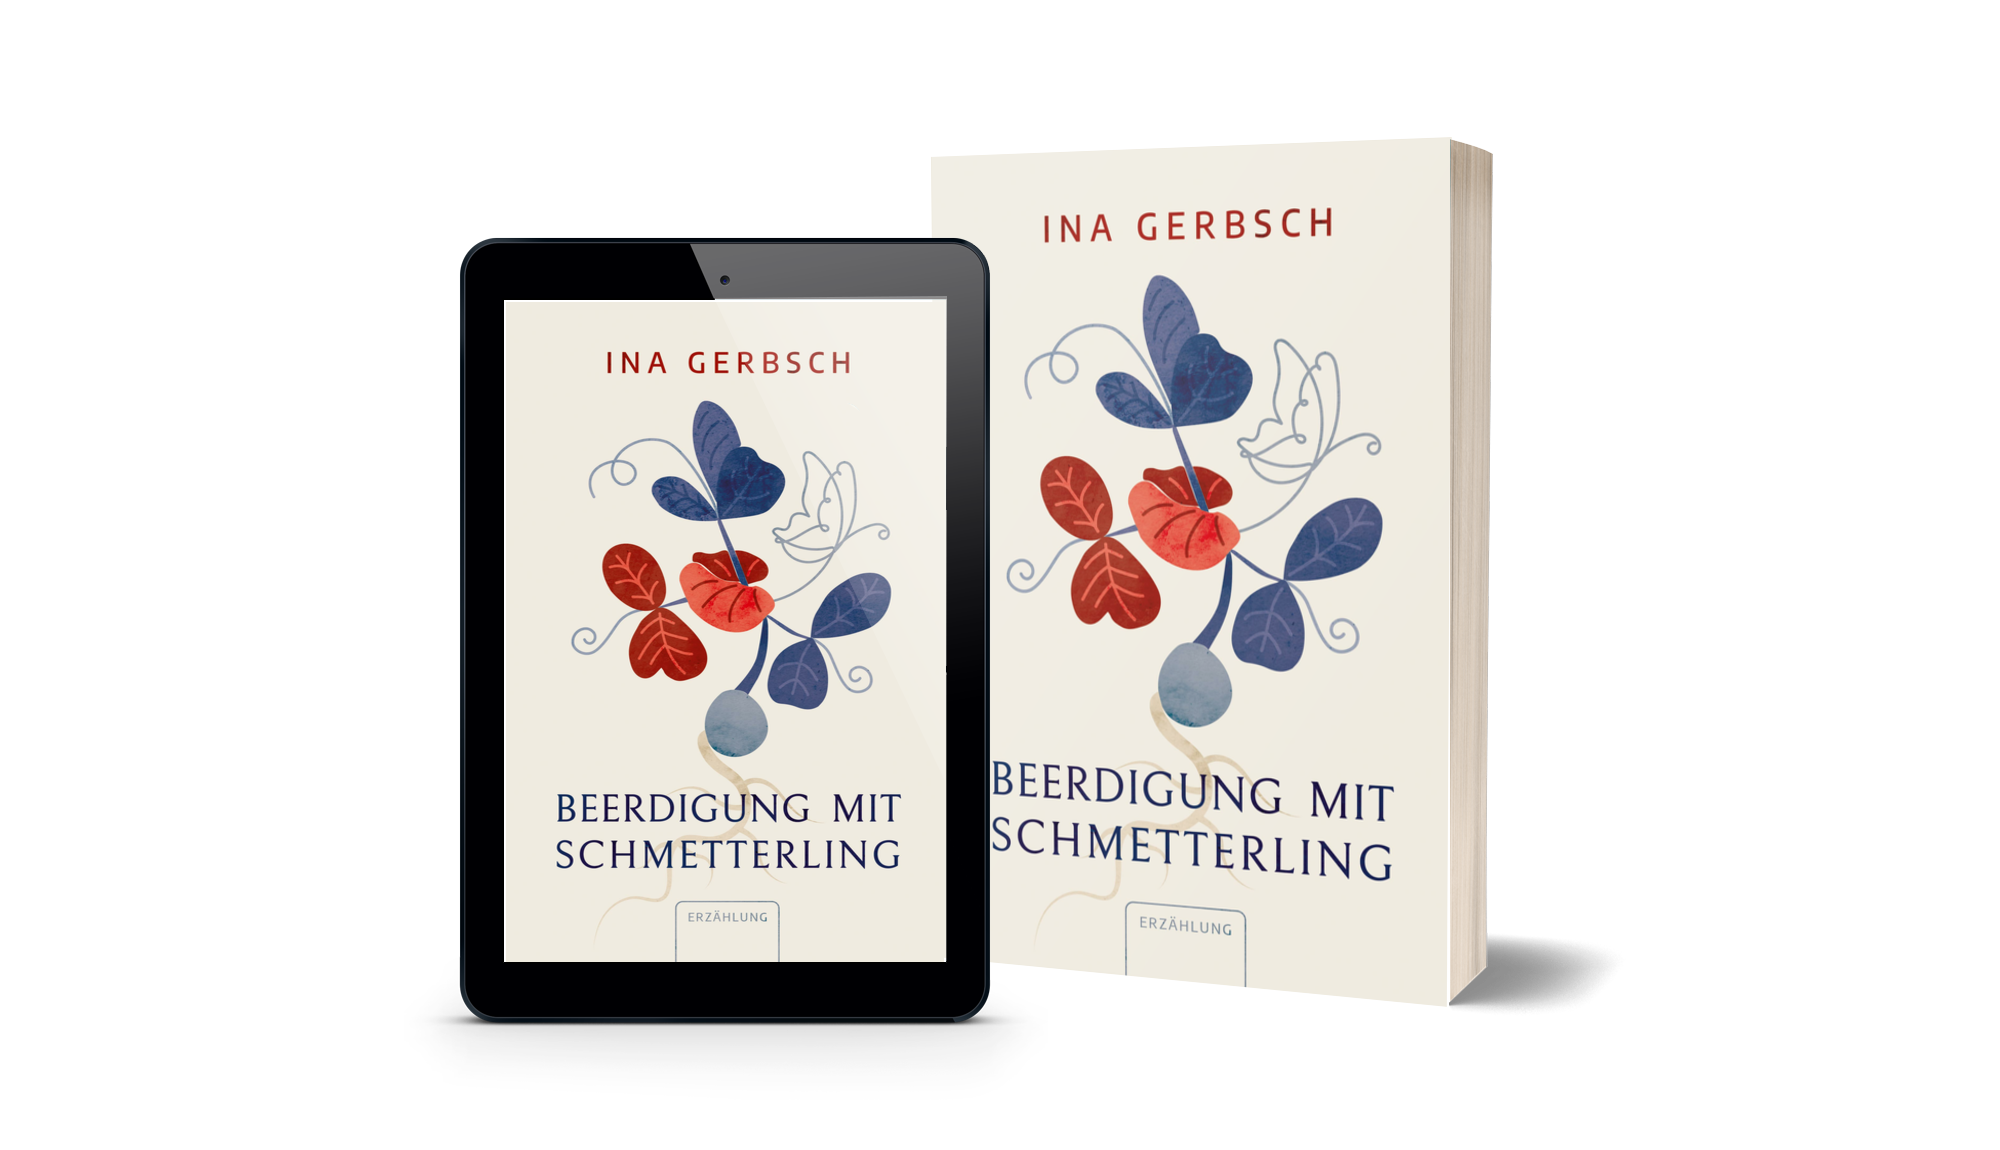 Ina Gerbsch, Coach und Autorin